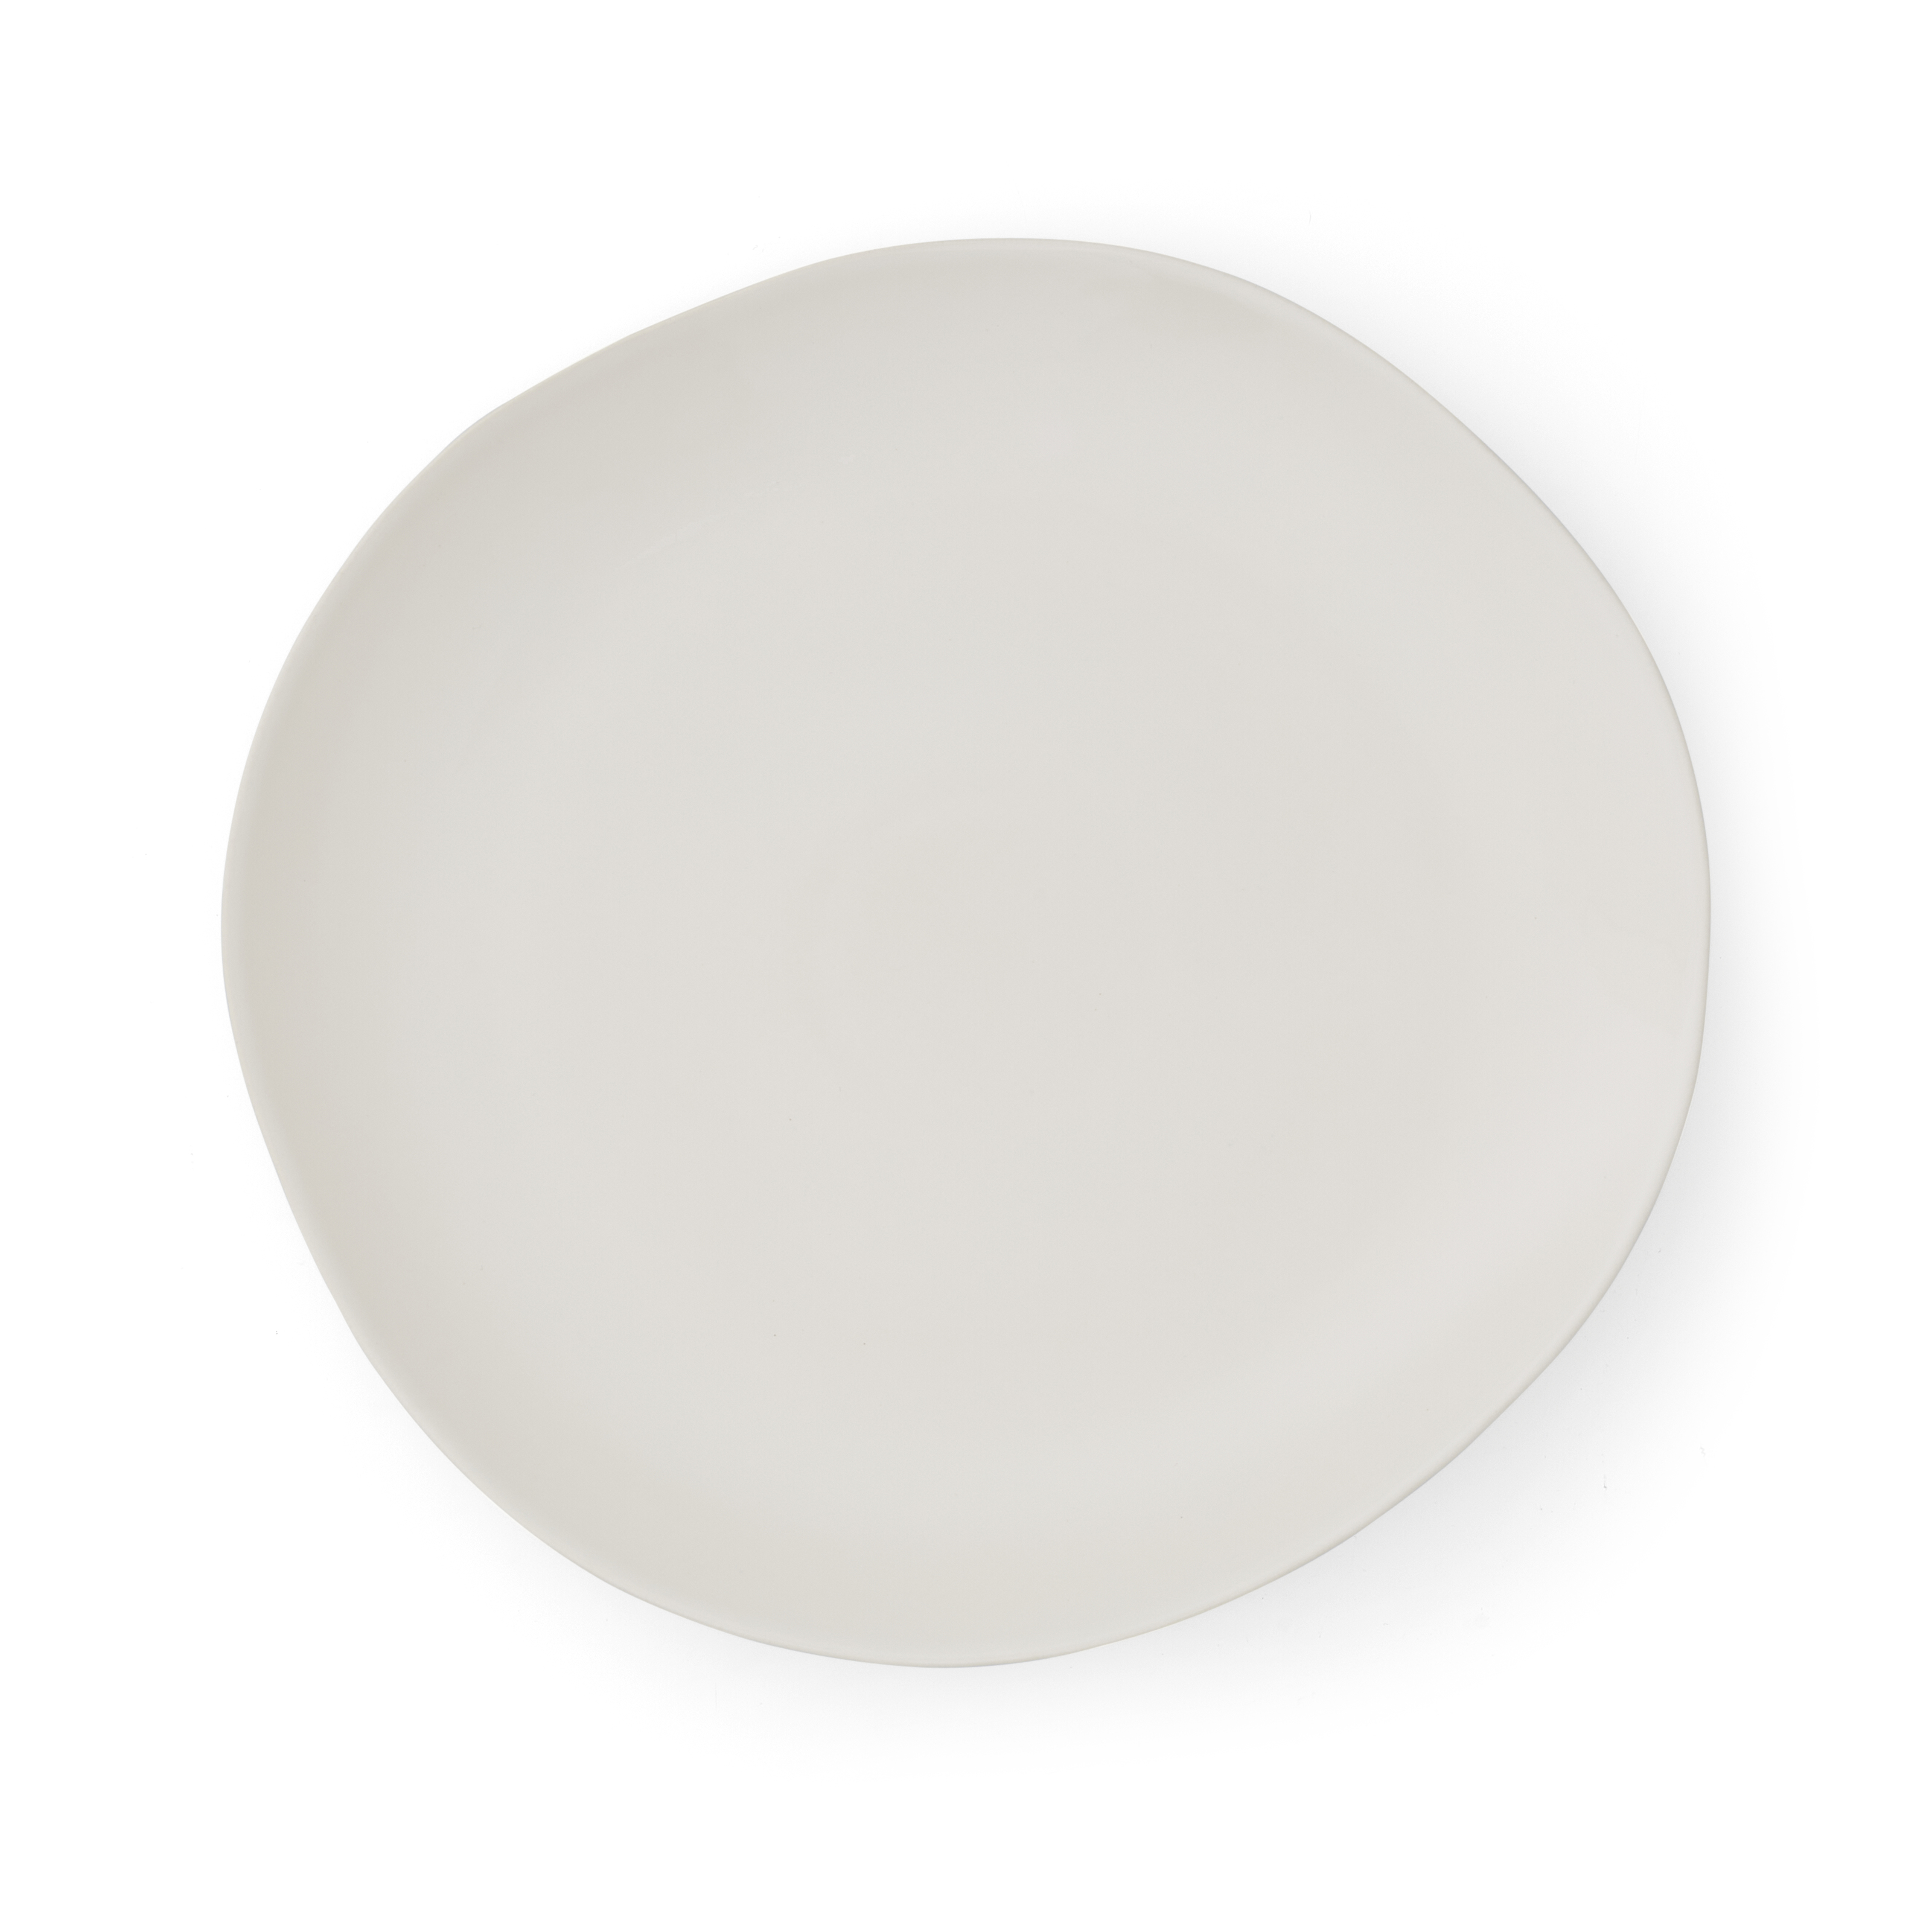 Sophie Conran Arbor Large Platter, Cream image number null